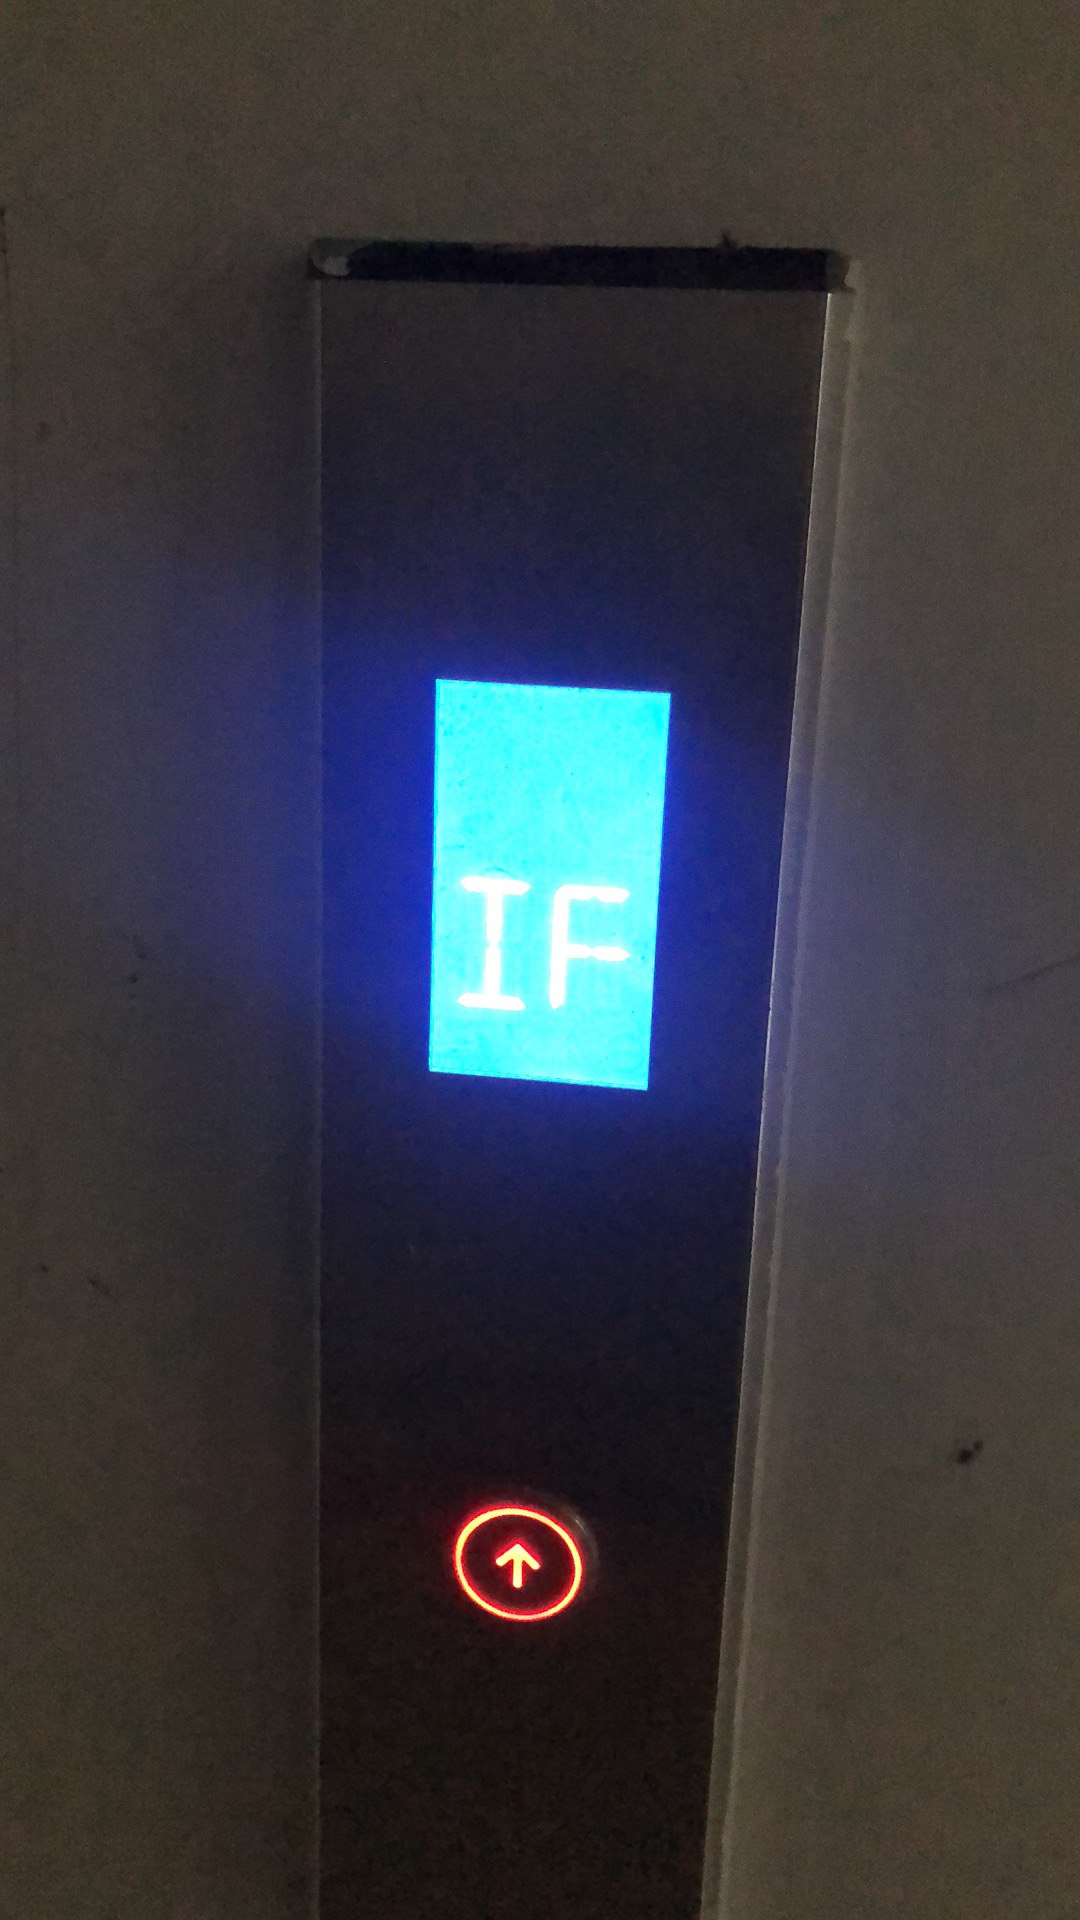 蒂森克虏伯子品牌sanfte尚途电梯安装后故障频发为哪般